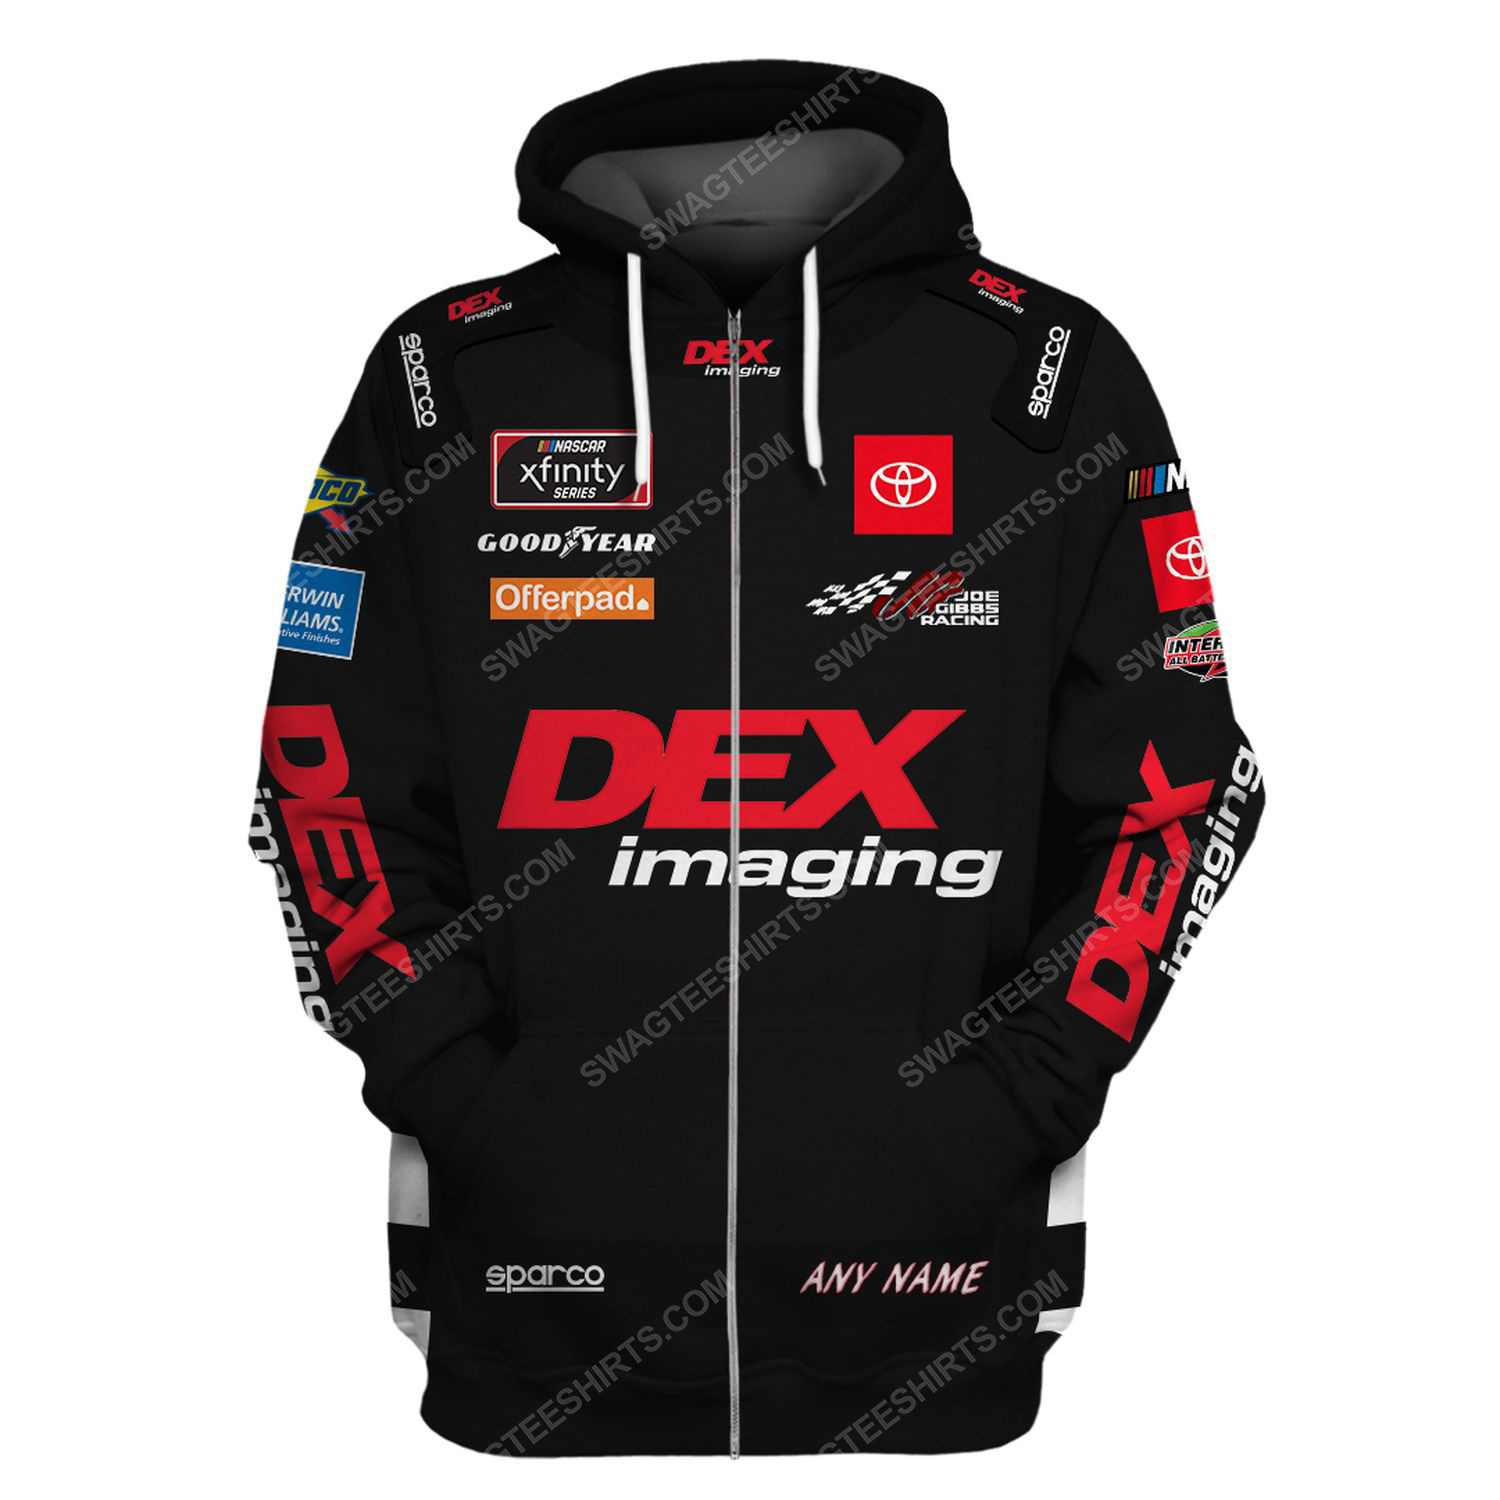 Custom the dex racing team motorsport full printing zip hoodie